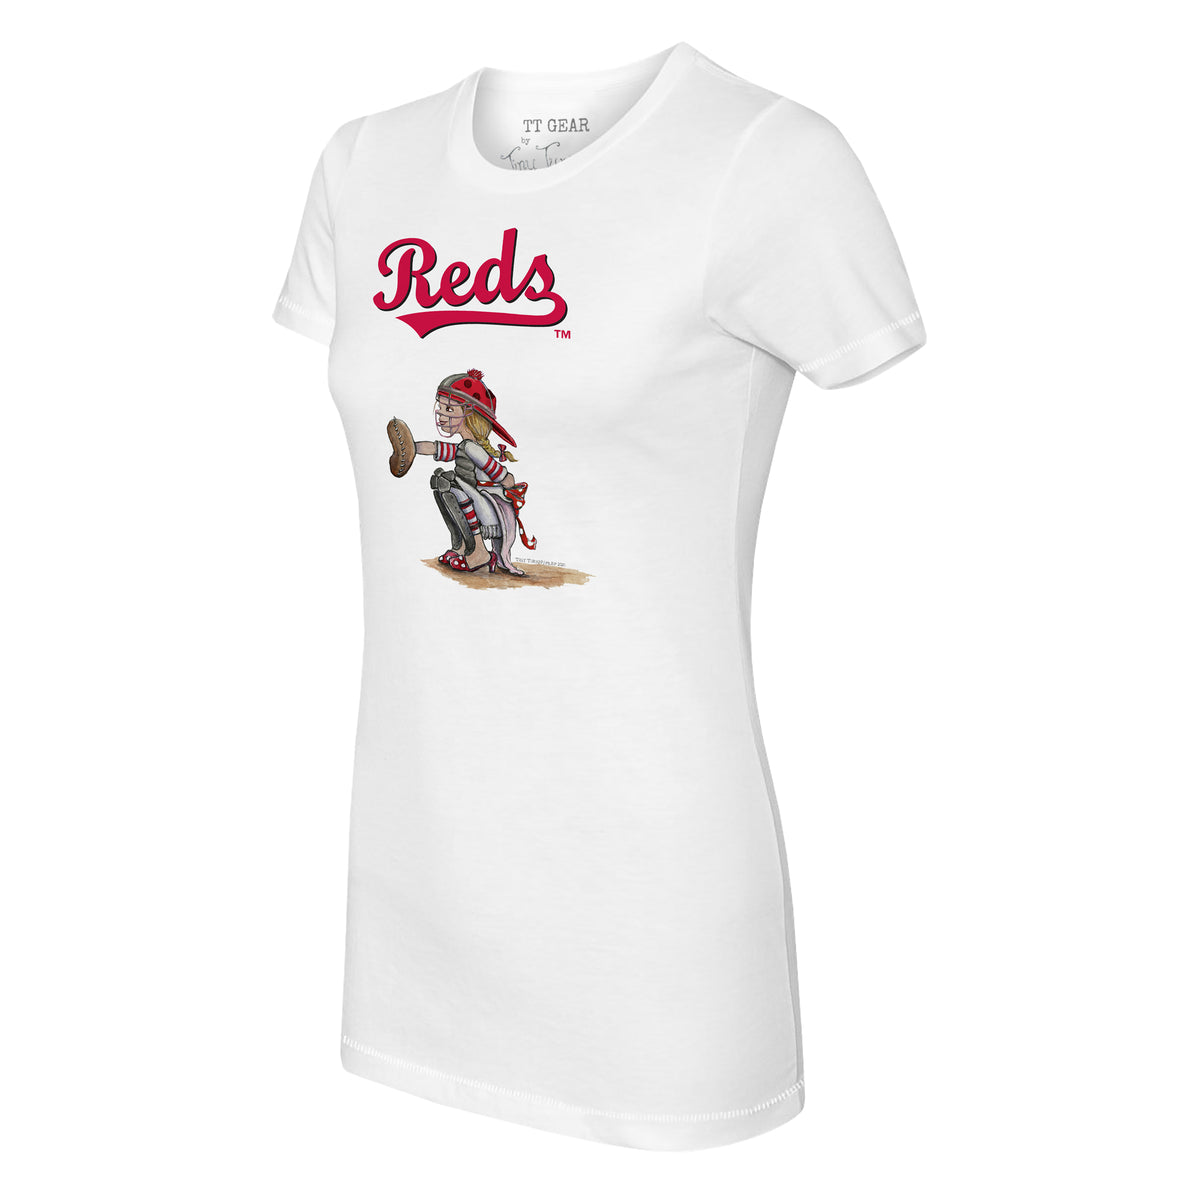 Cincinnati Reds Kate the Catcher Tee Shirt